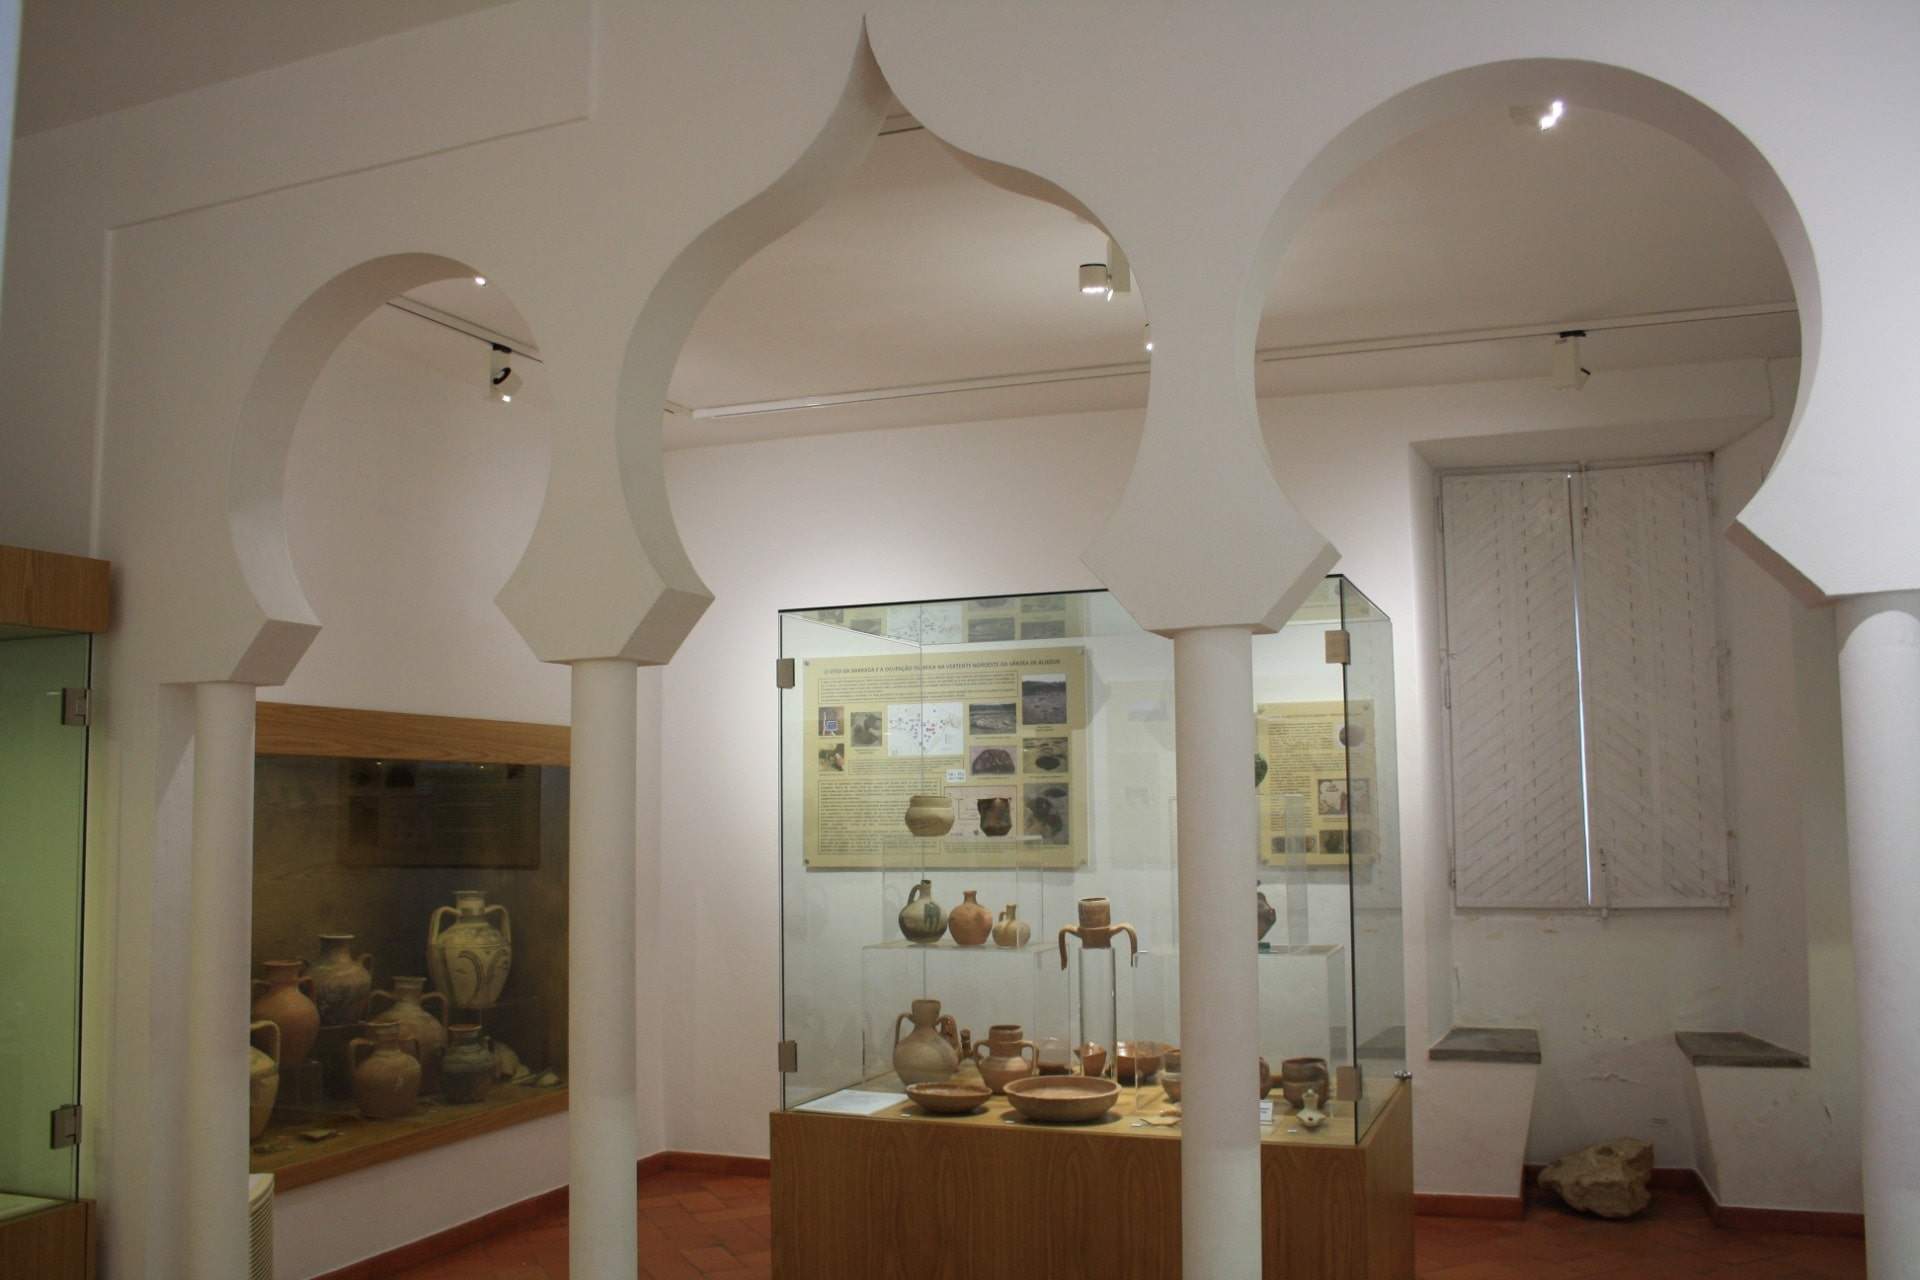 Sala do Legado Andalusino / Aljezur / ADPHA - Associação de Defesa do Património Histórico e Arqueológico de Aljezur